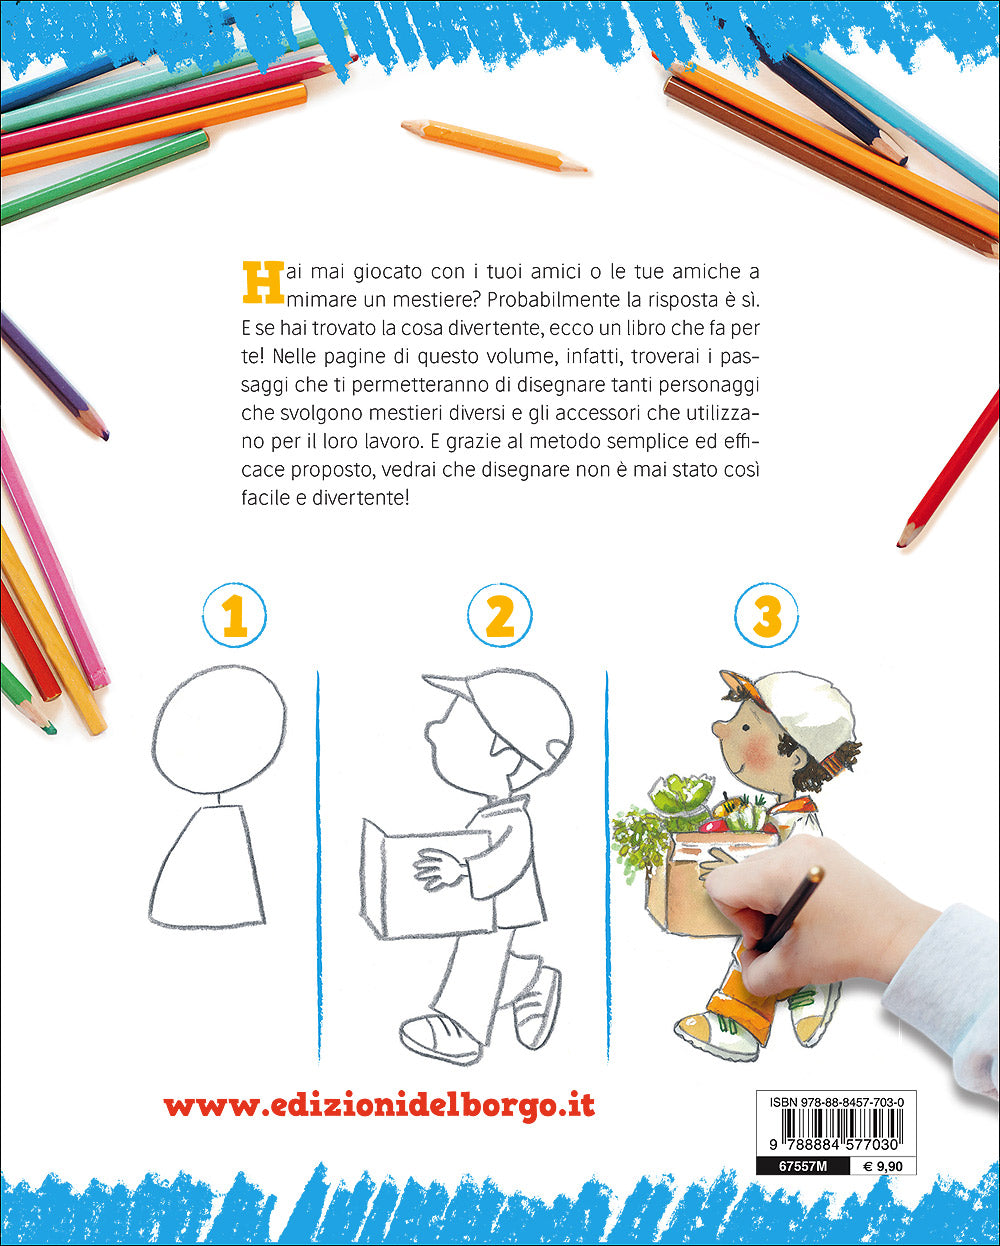 Imparare a disegnare. Corso per bambini - Vol. 5::Disegna i mestieri - Un manuale con tanti esempi per imparare a disegnare passo dopo passo